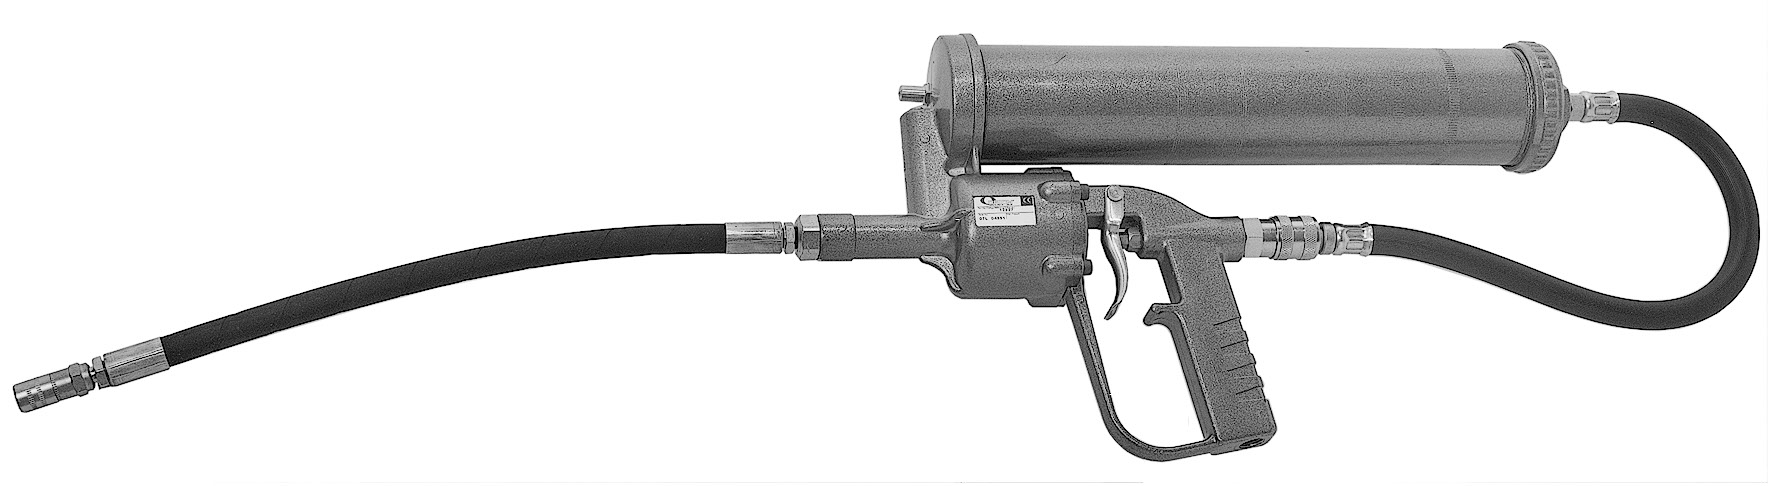 Pistola engrasadora a batería 20V 2,0 Ah - Alentec & Orion AB